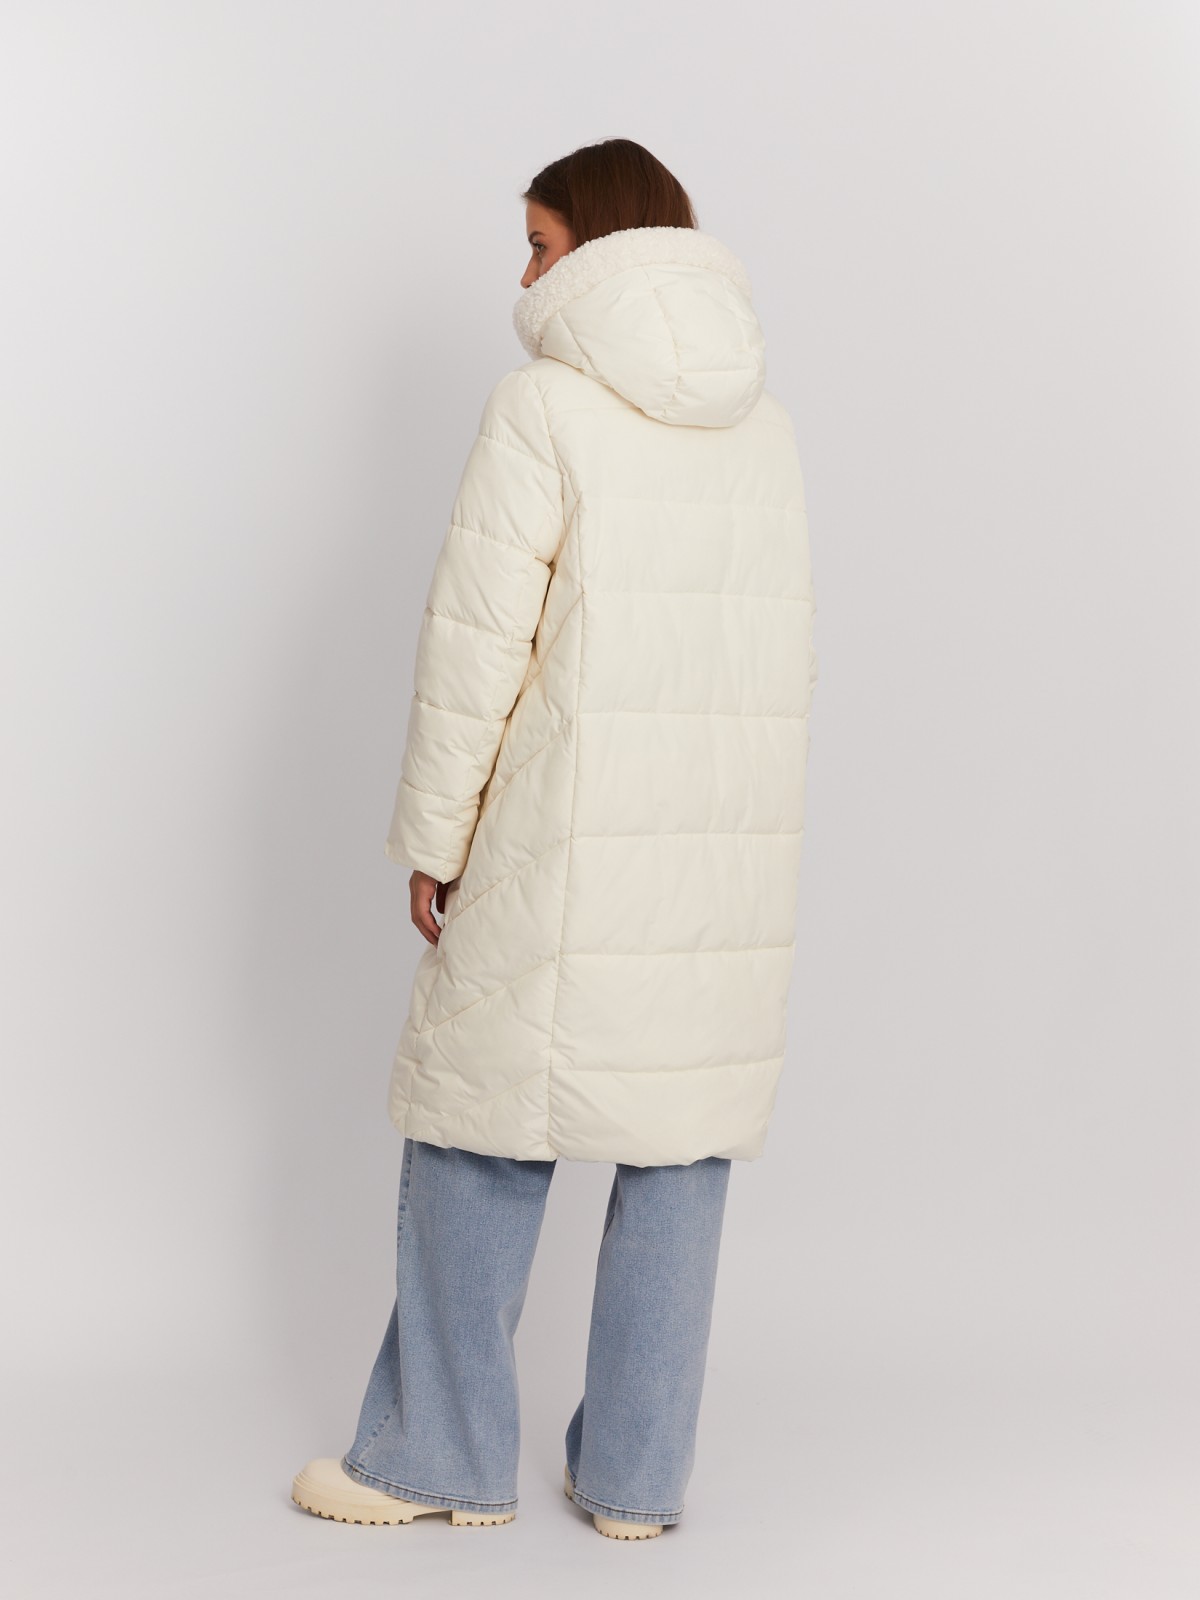 Тёплая куртка-пальто с капюшоном и отделкой из экомеха zolla 022425276044, цвет молоко, размер M - фото 6